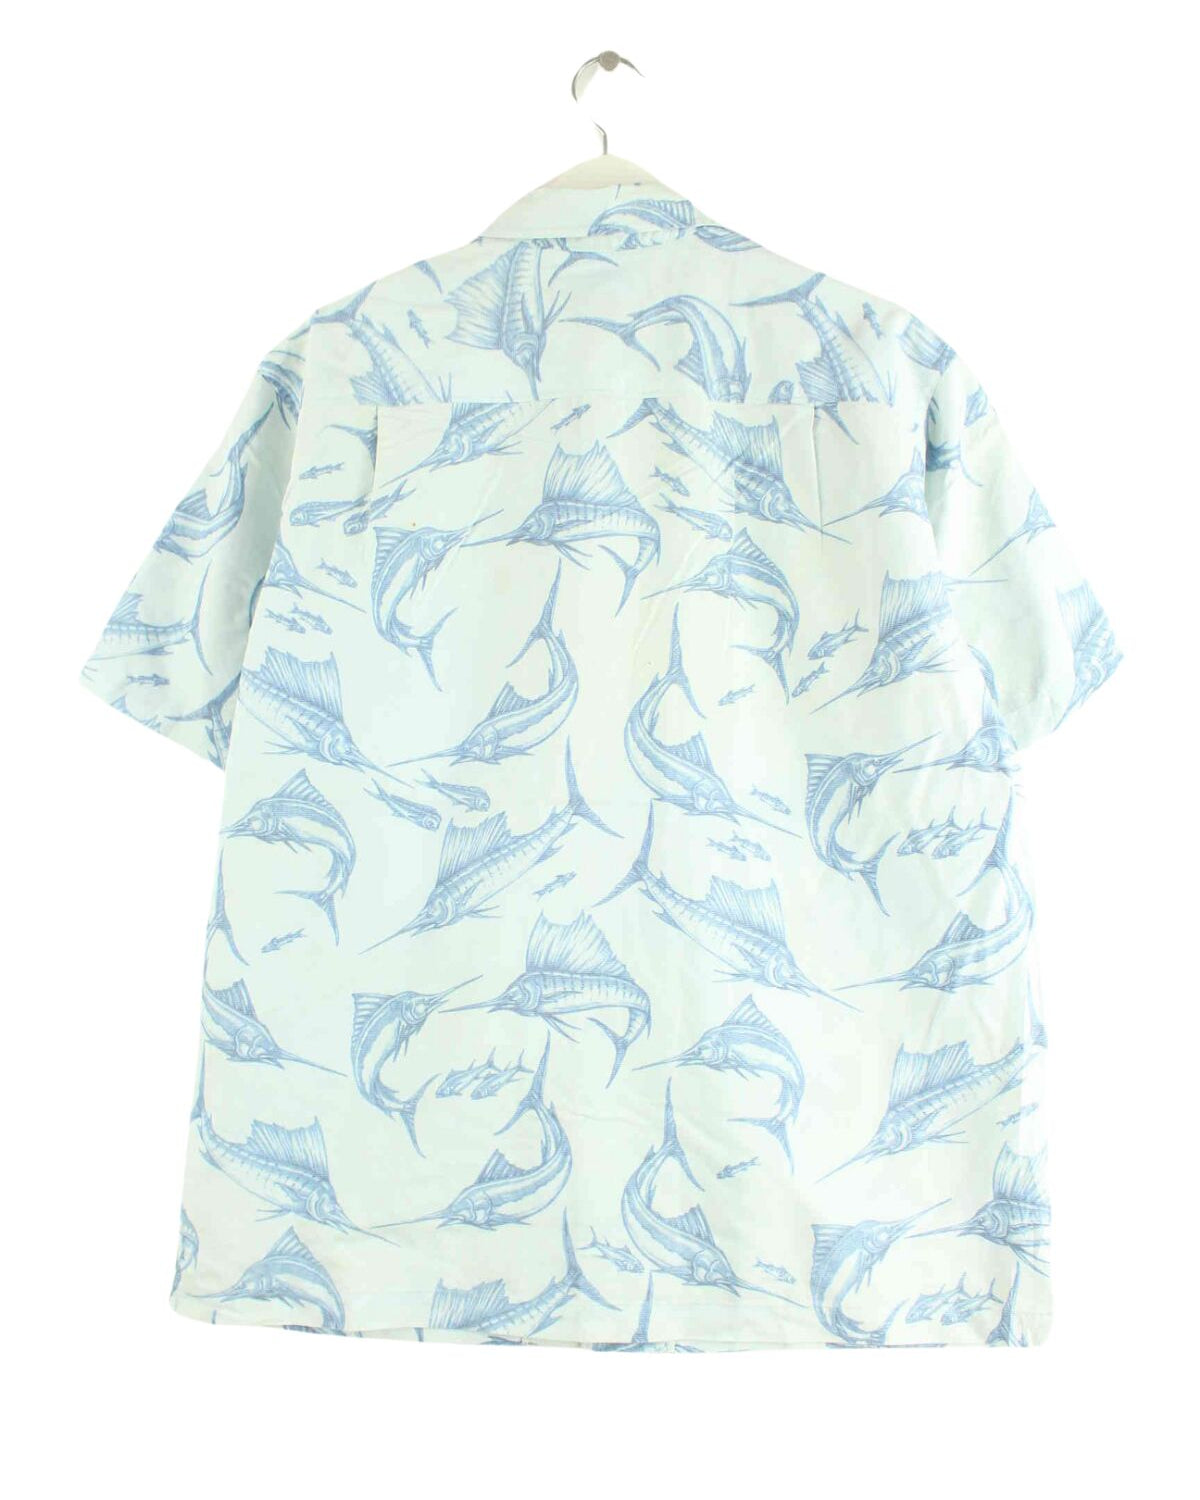 Vintage Sailfish Pattern Hawaii Hemd Blau M (back image)